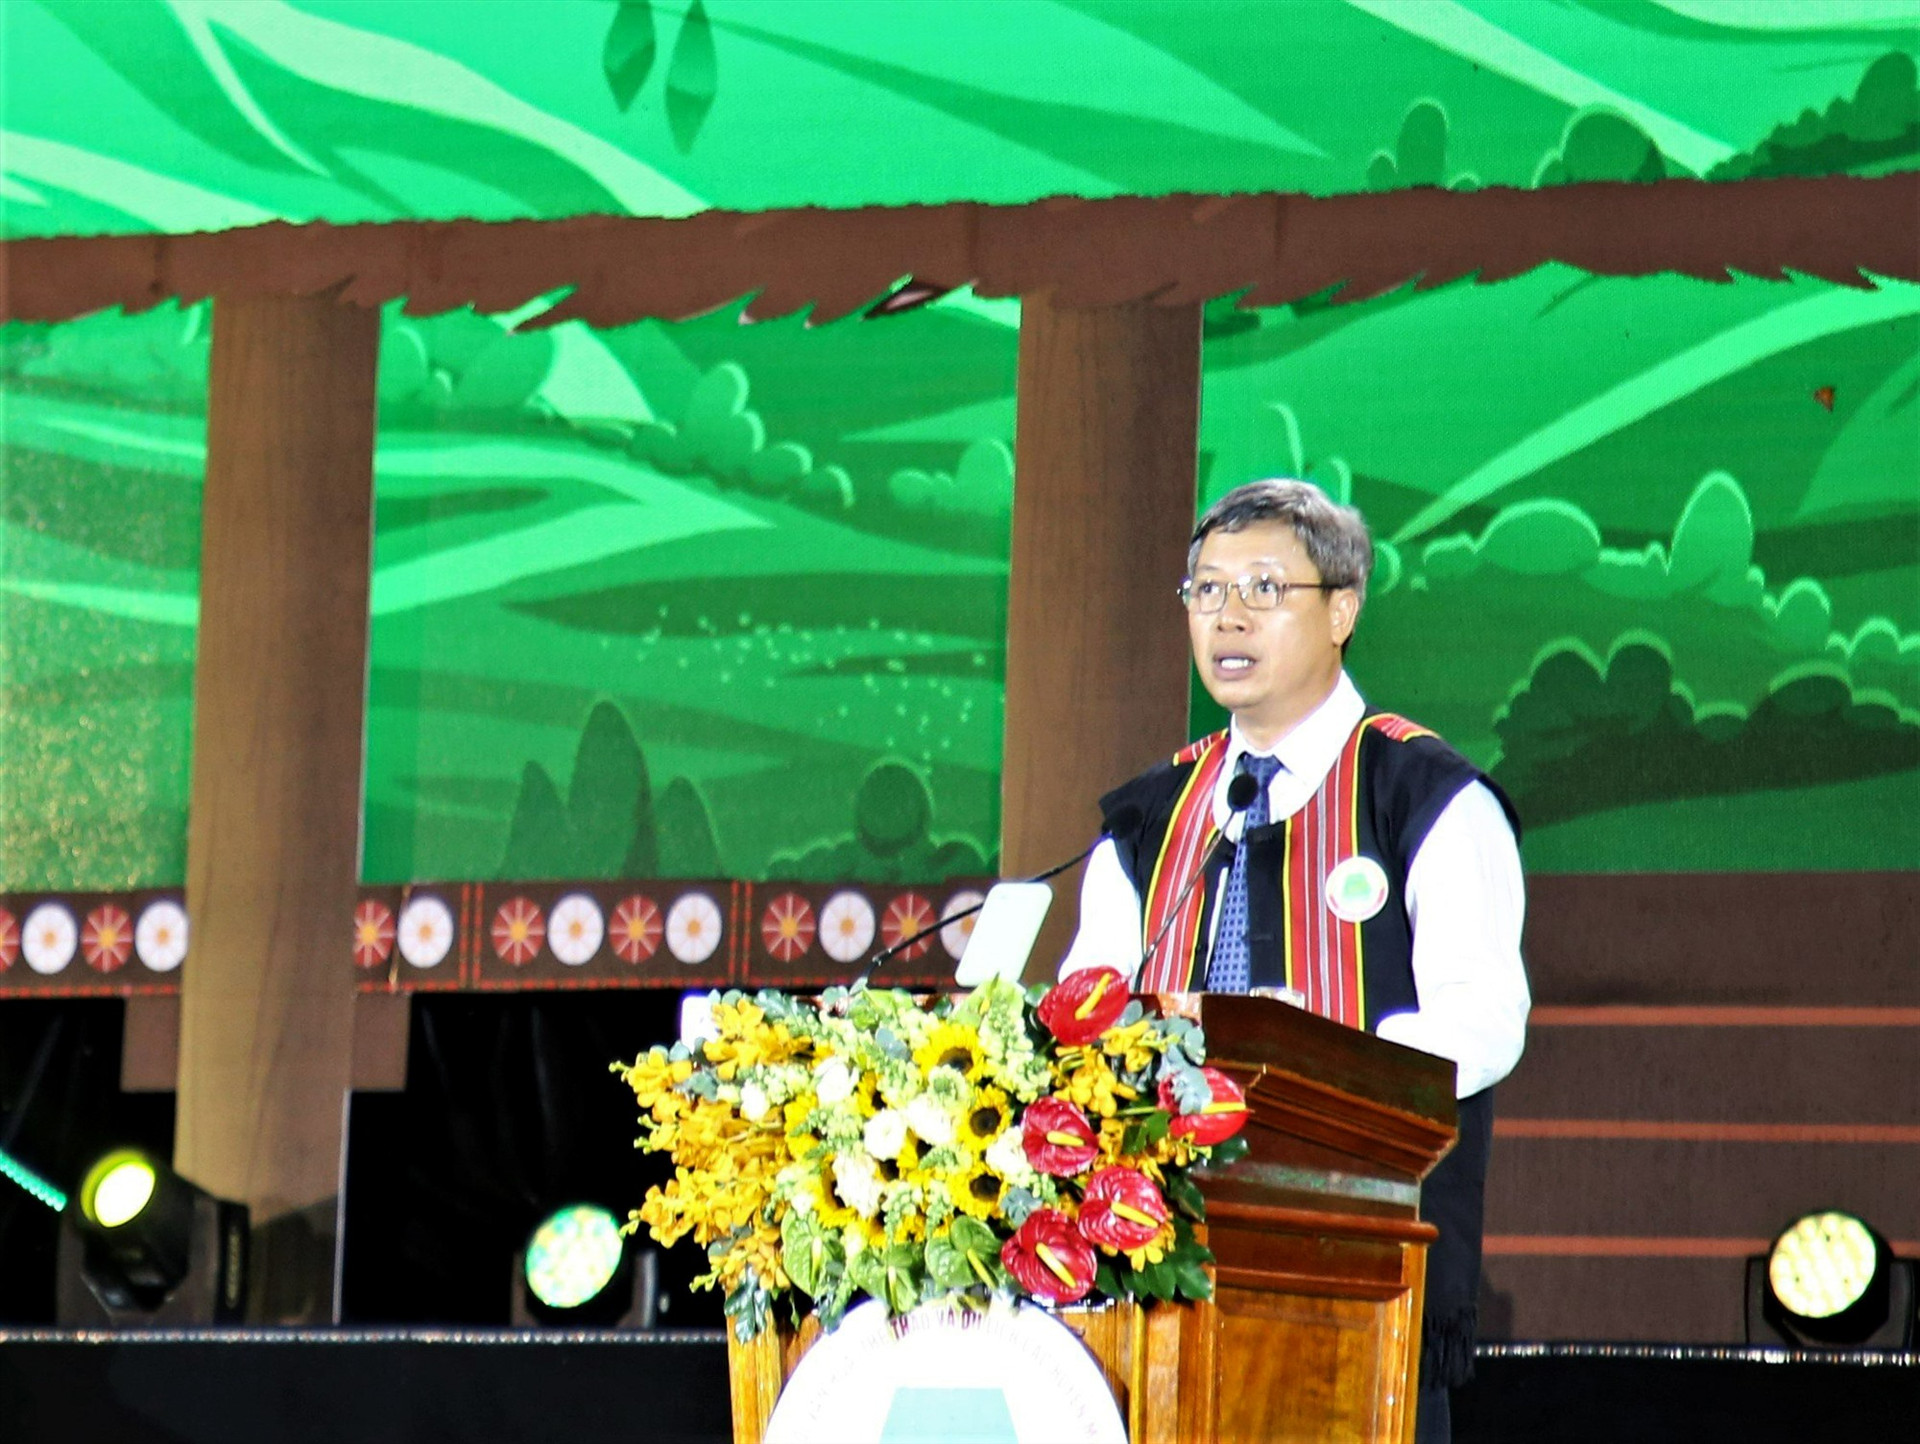 Phó Chủ tịch UBND tỉnh Hồ Quang Bửu phát biểu khai mạc. Ảnh: H.Đ.Q